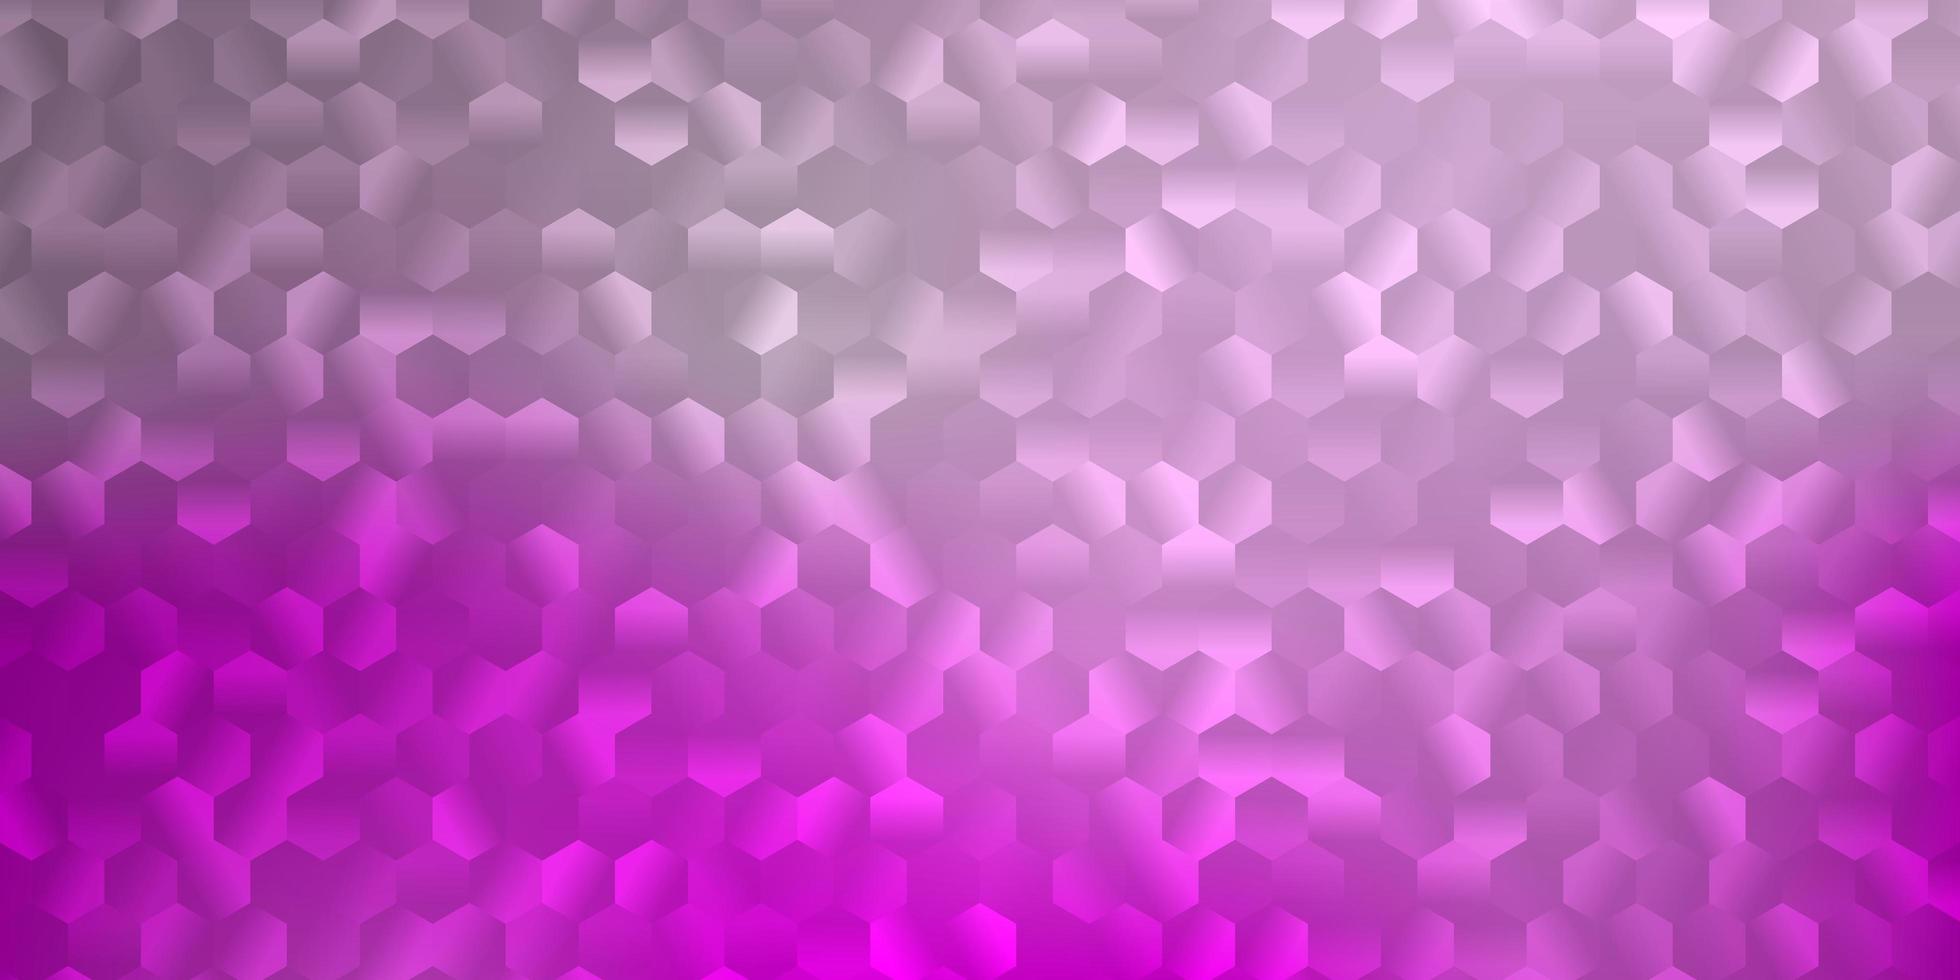 fond de vecteur rose clair avec des formes hexagonales.